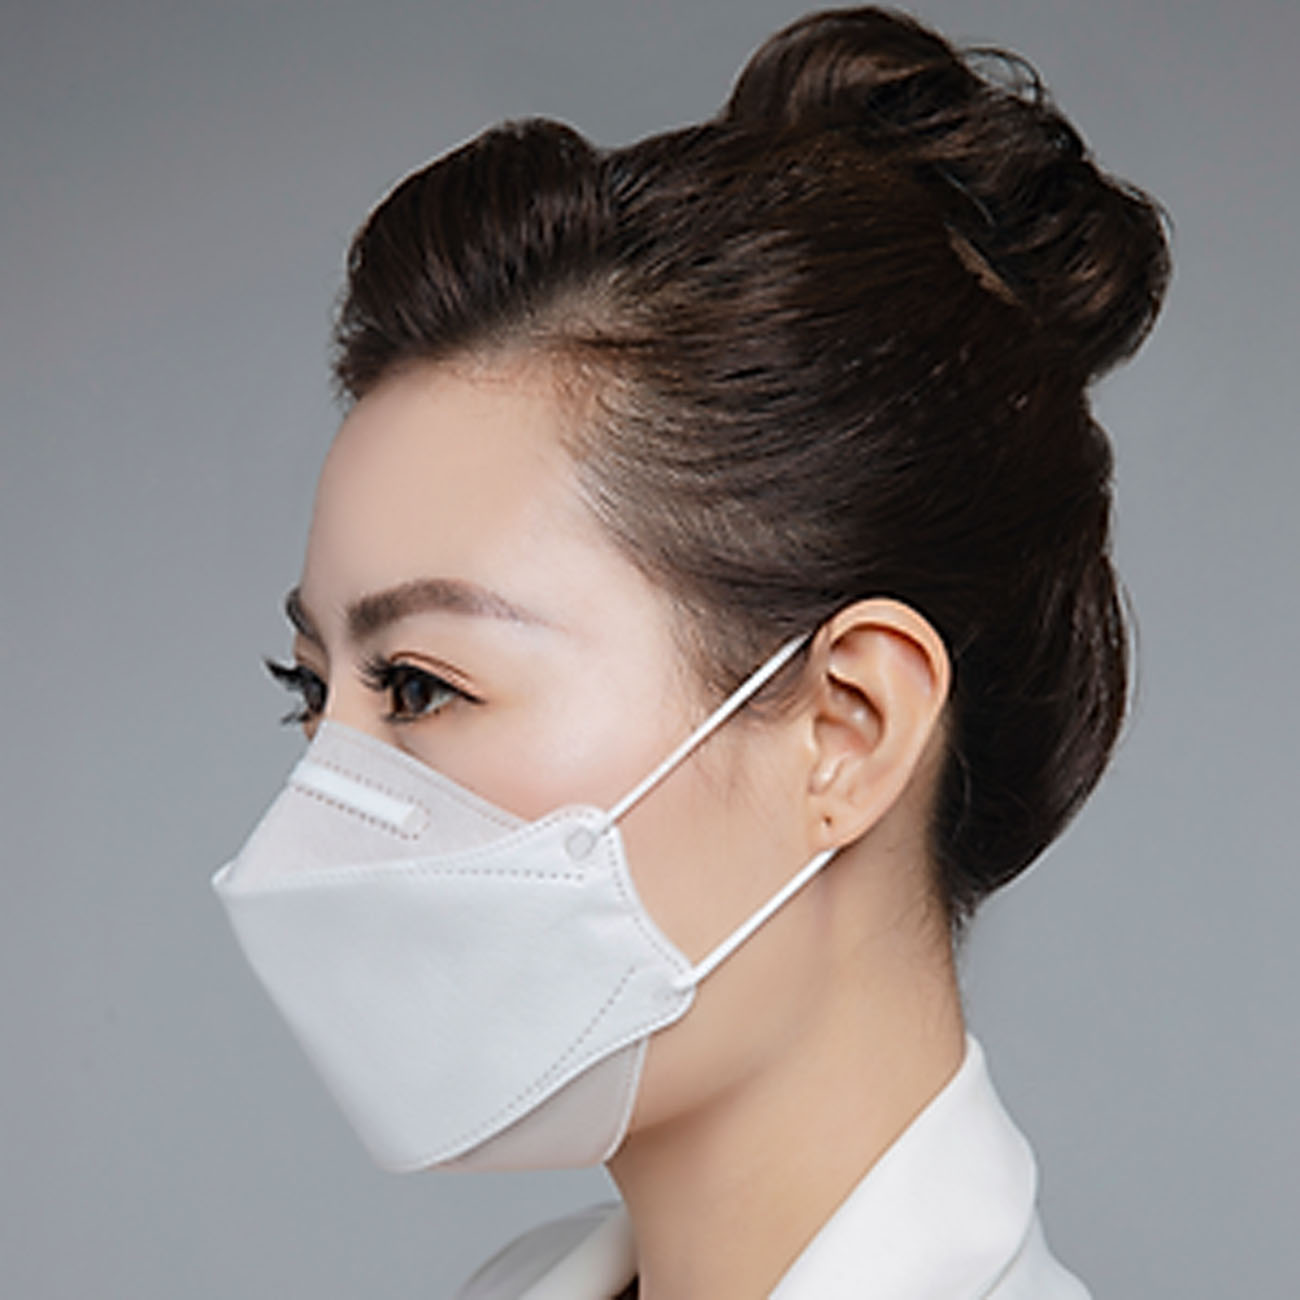 Hộp 10 cái Khẩu trang 4D Hello Mask cao cấp bảo vệ hô hấp kháng khuẩn , chống bụi siêu mịn PM2.5 ; tặng 1 móc treo khóa mica